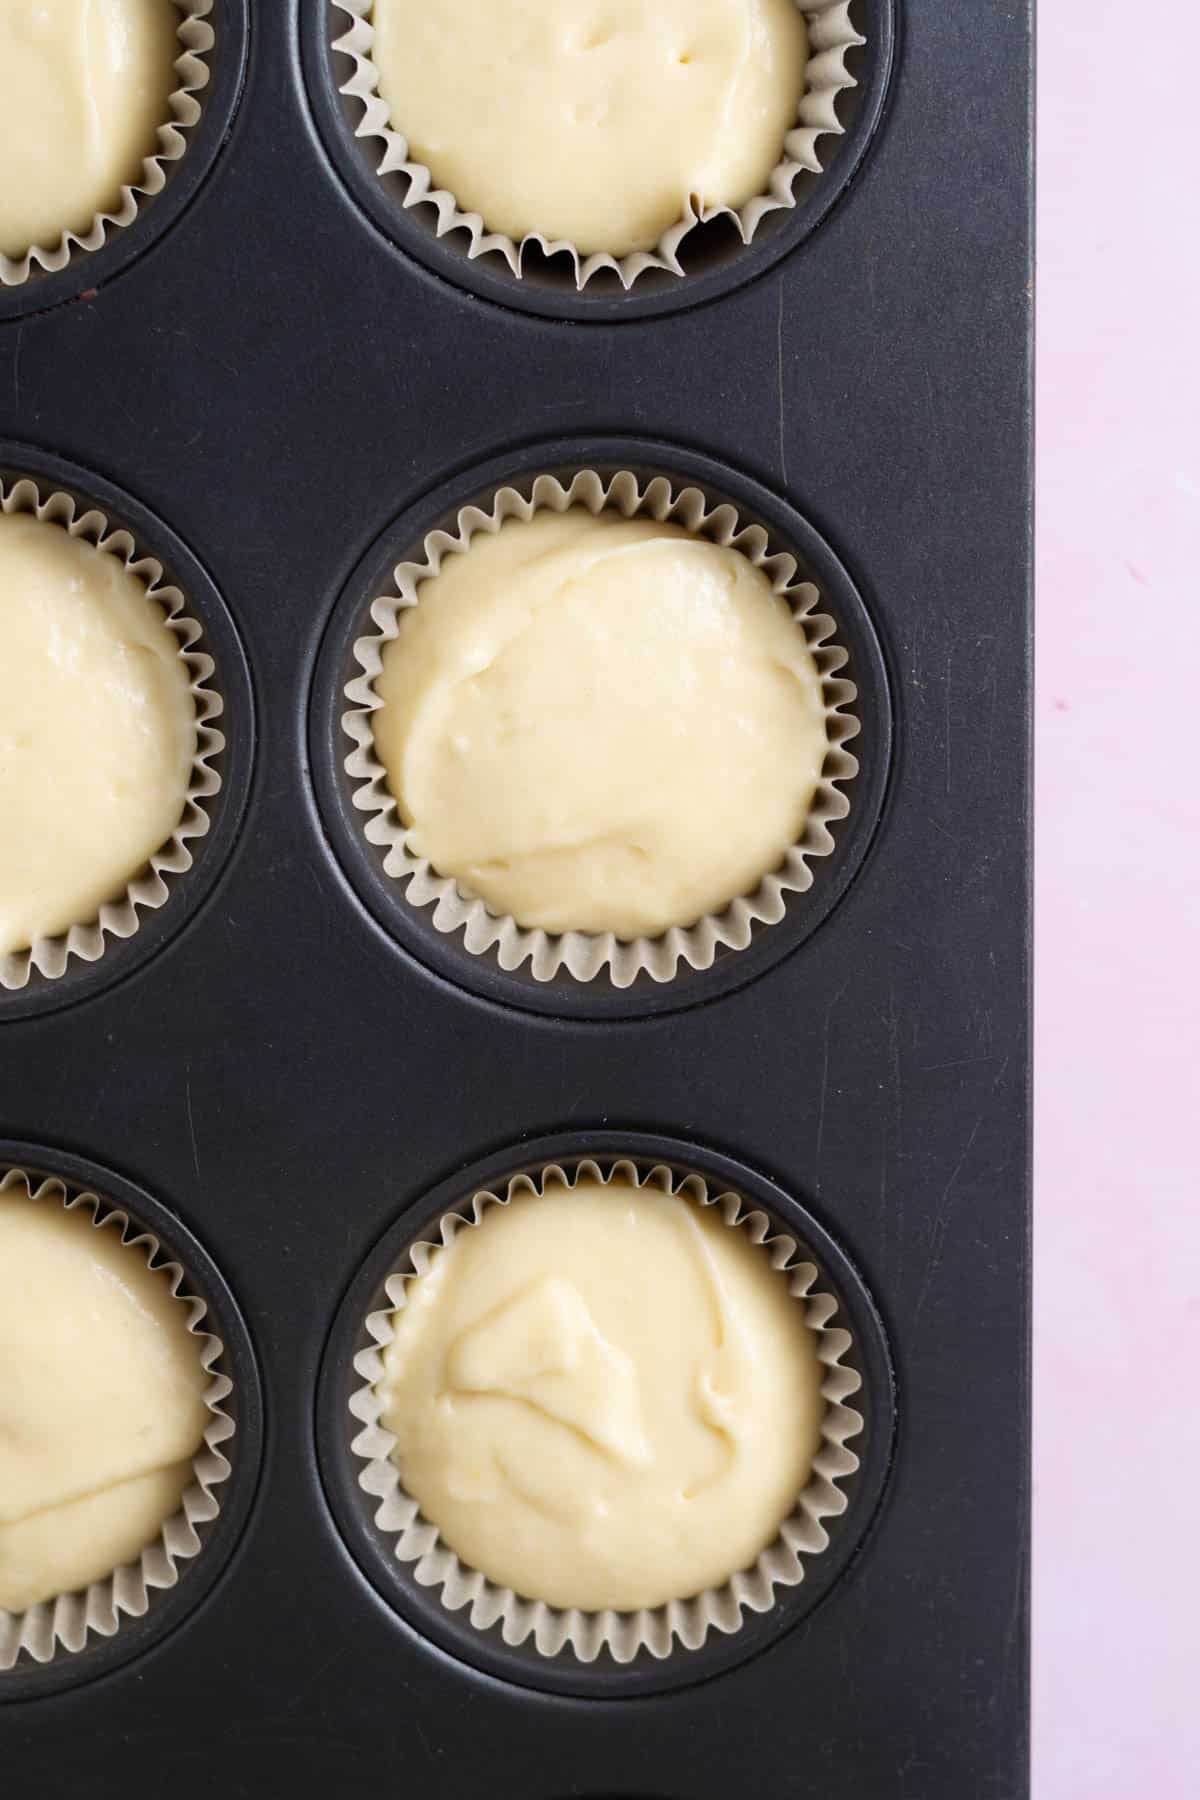 vanilla cupcake batter in cupcake liners